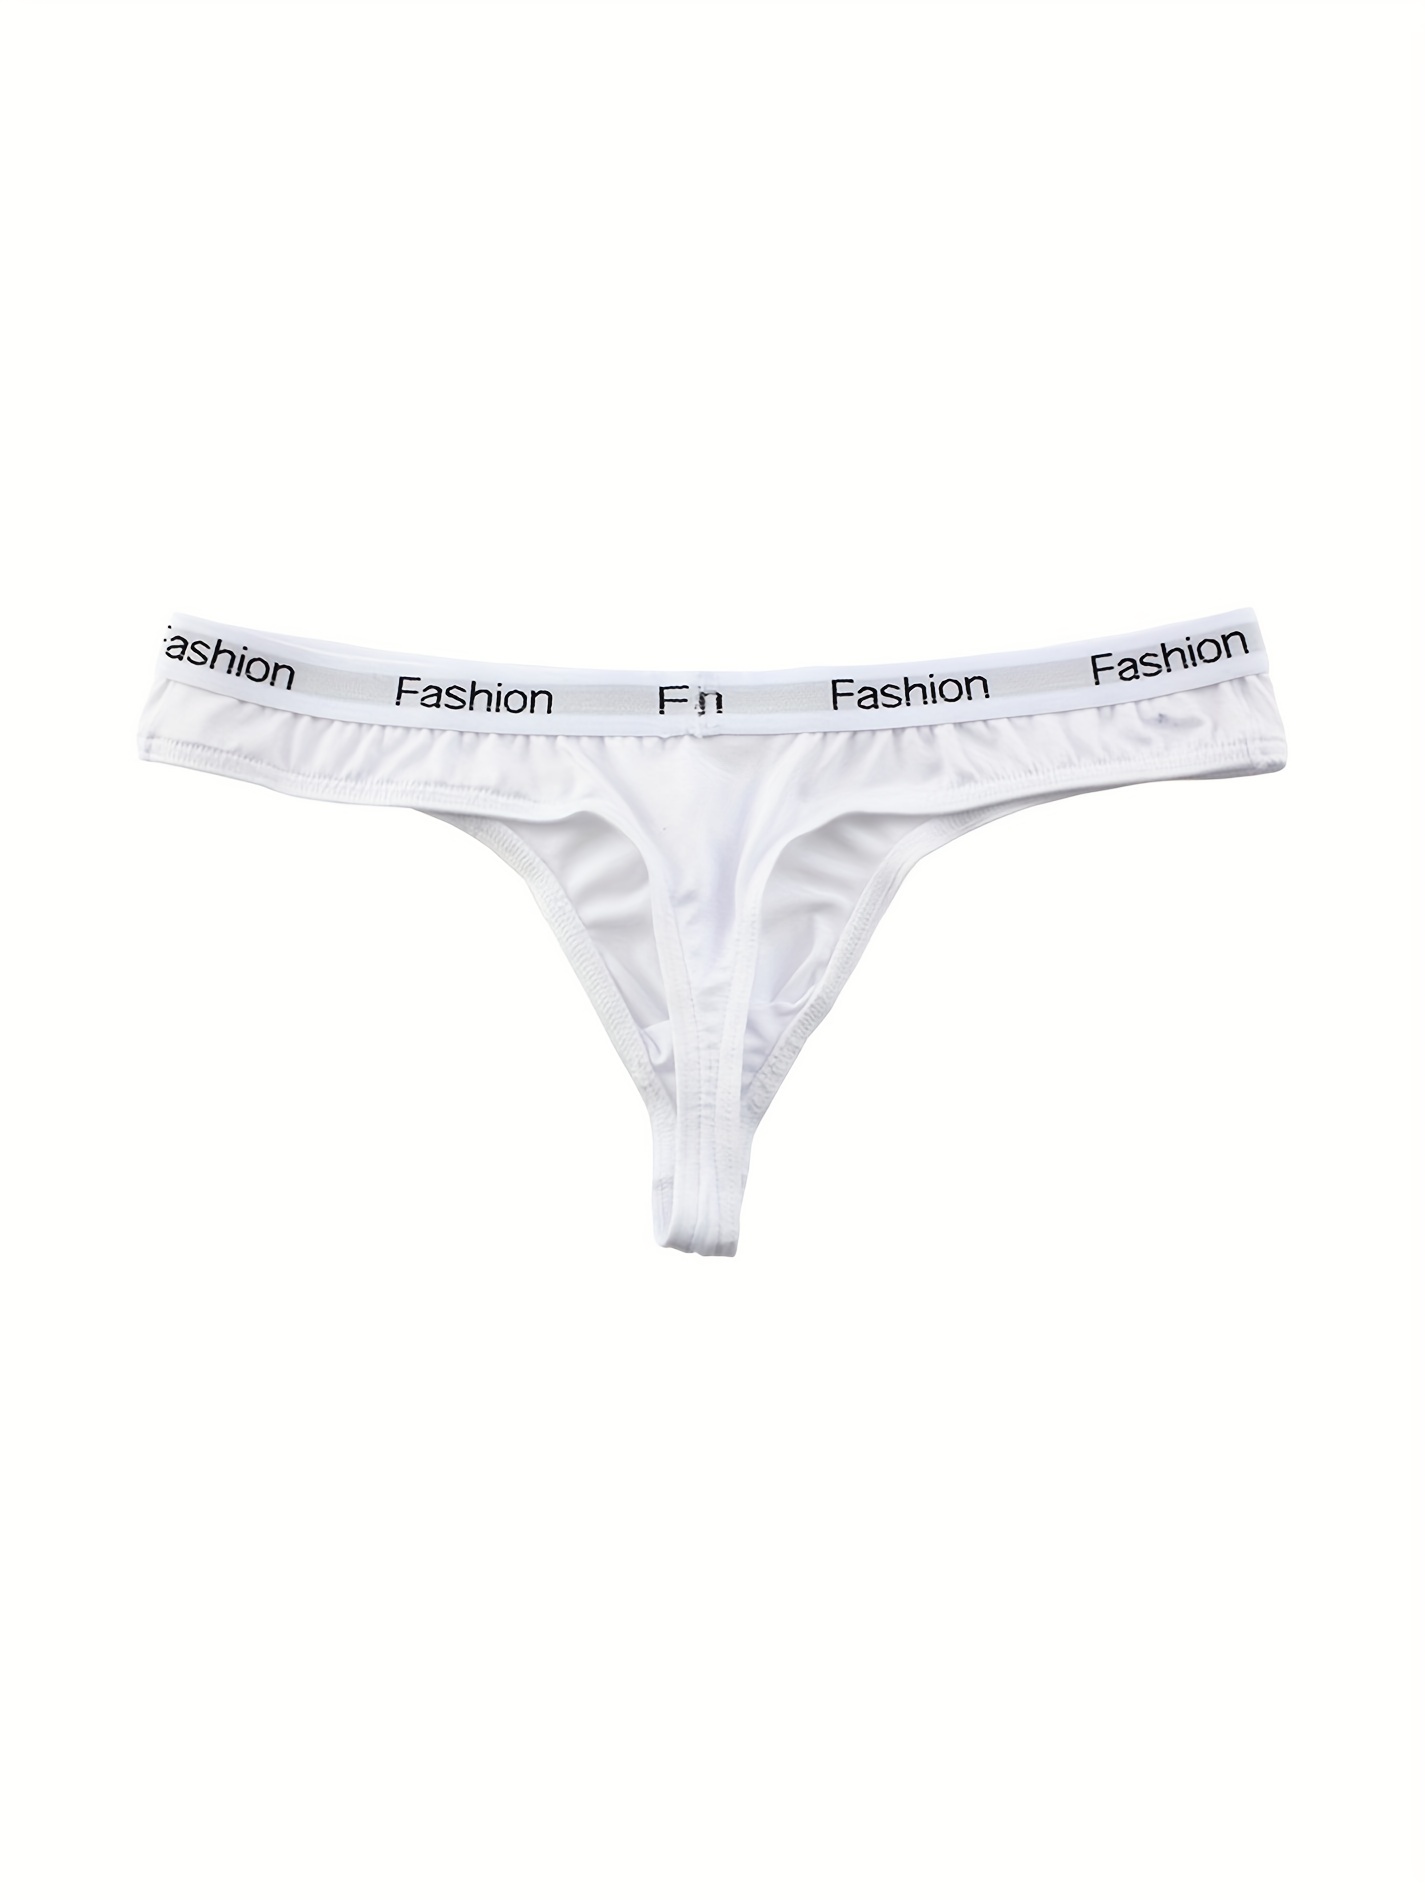 Calvin Klein Underwear Breathable Cotton Mesh Jock Straps 3 Pack